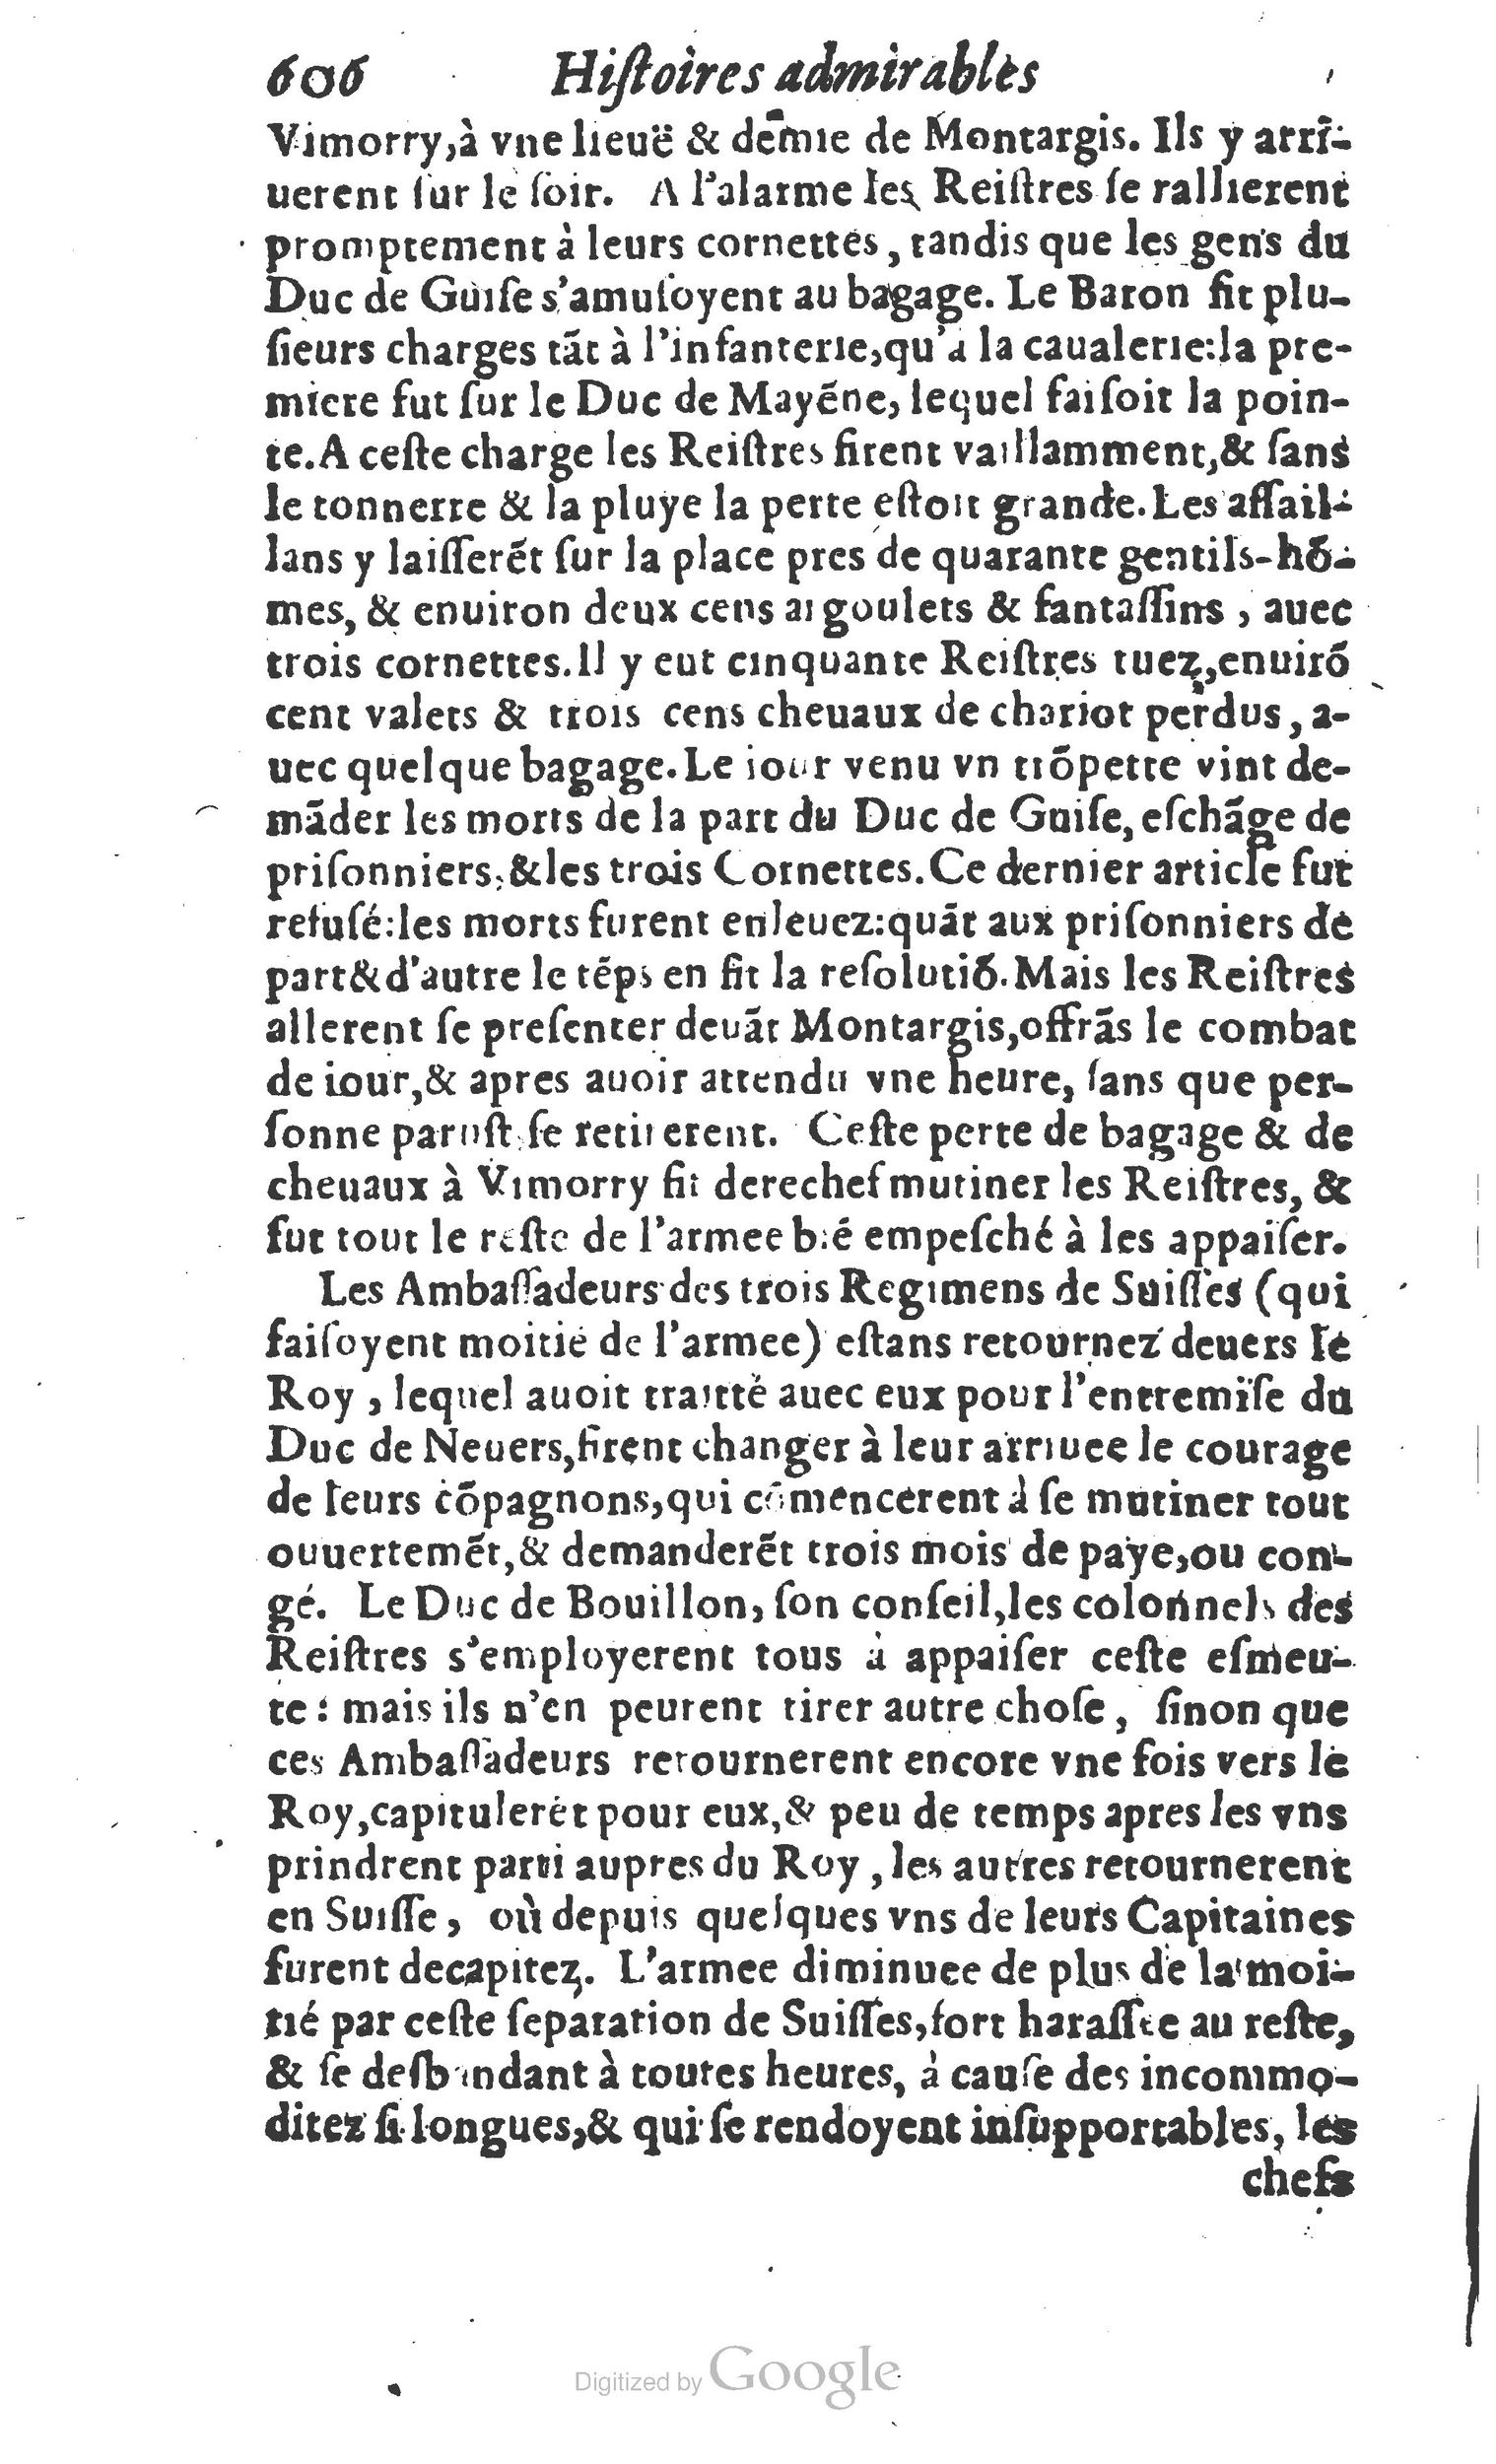 1610 Trésor d’histoires admirables et mémorables de nostre temps Marceau Princeton_Page_0627.jpg